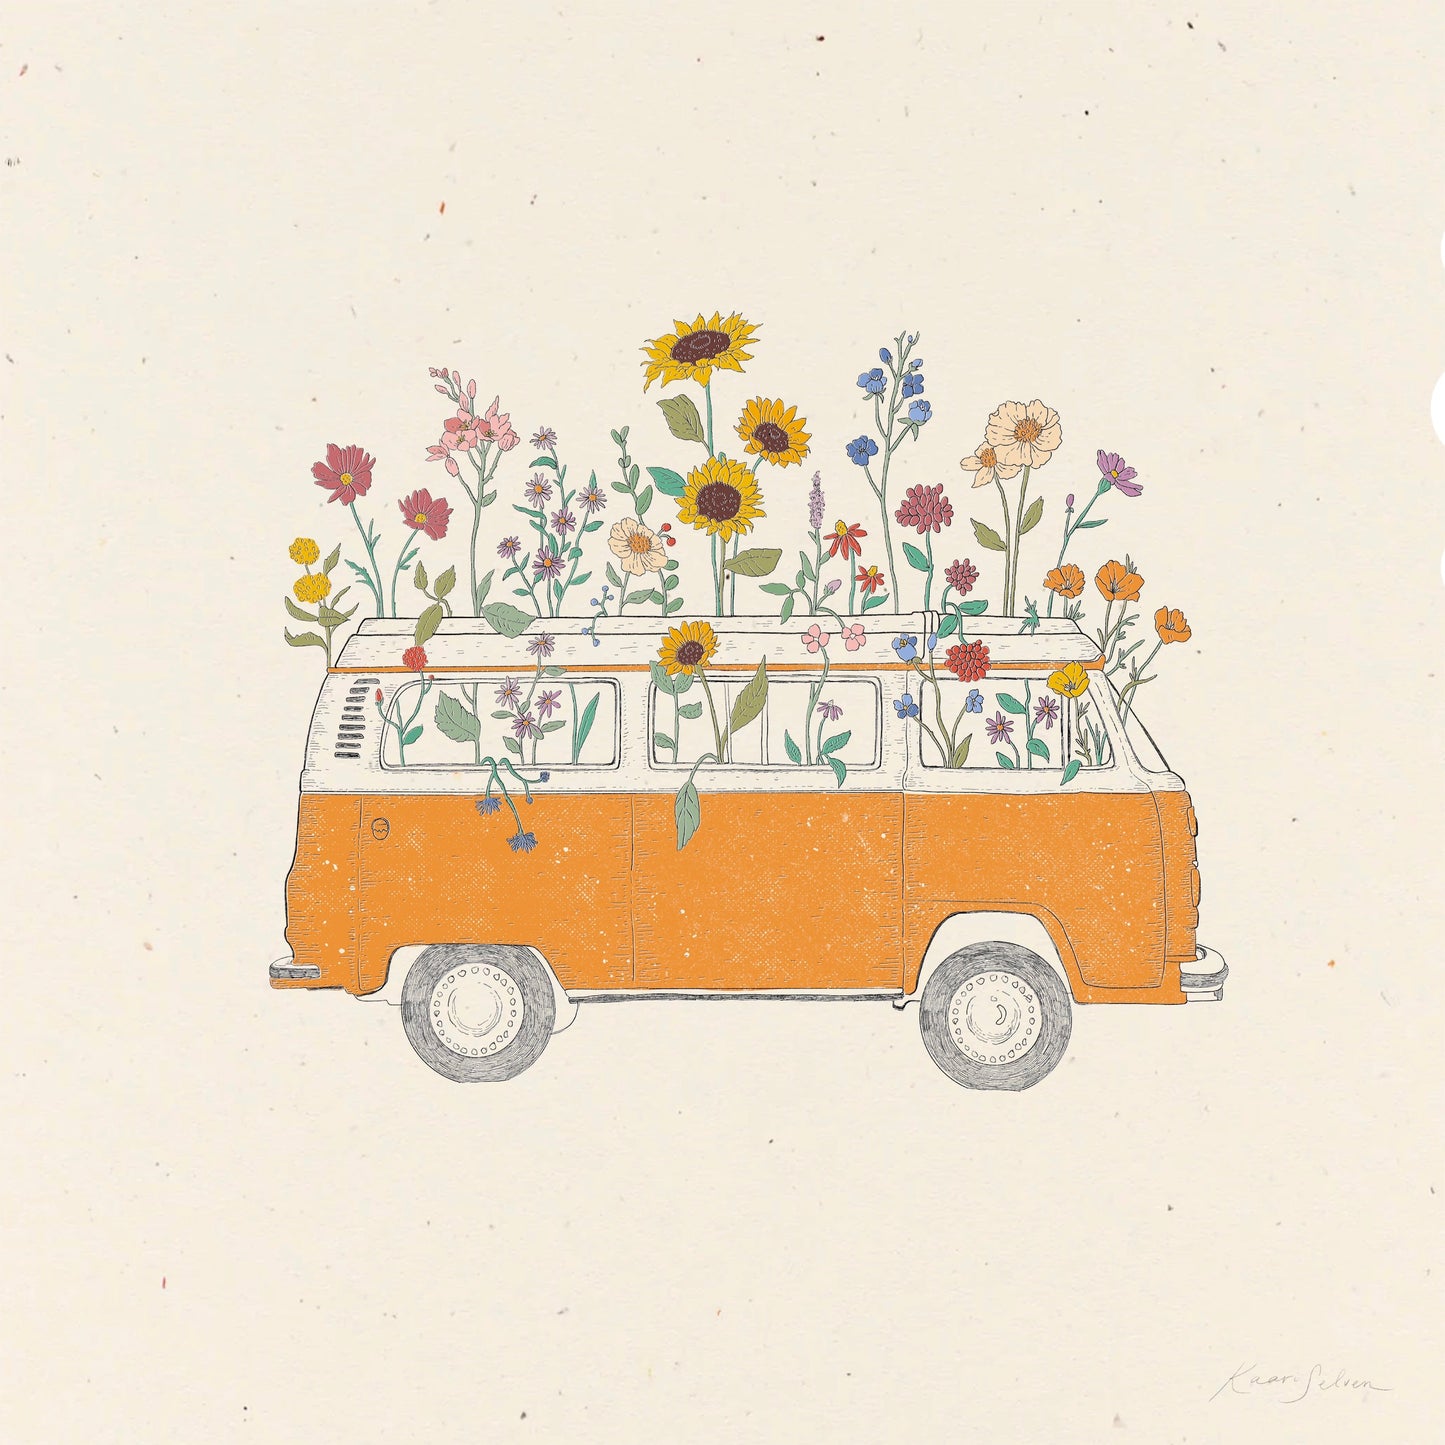 Flowering Van Art Print